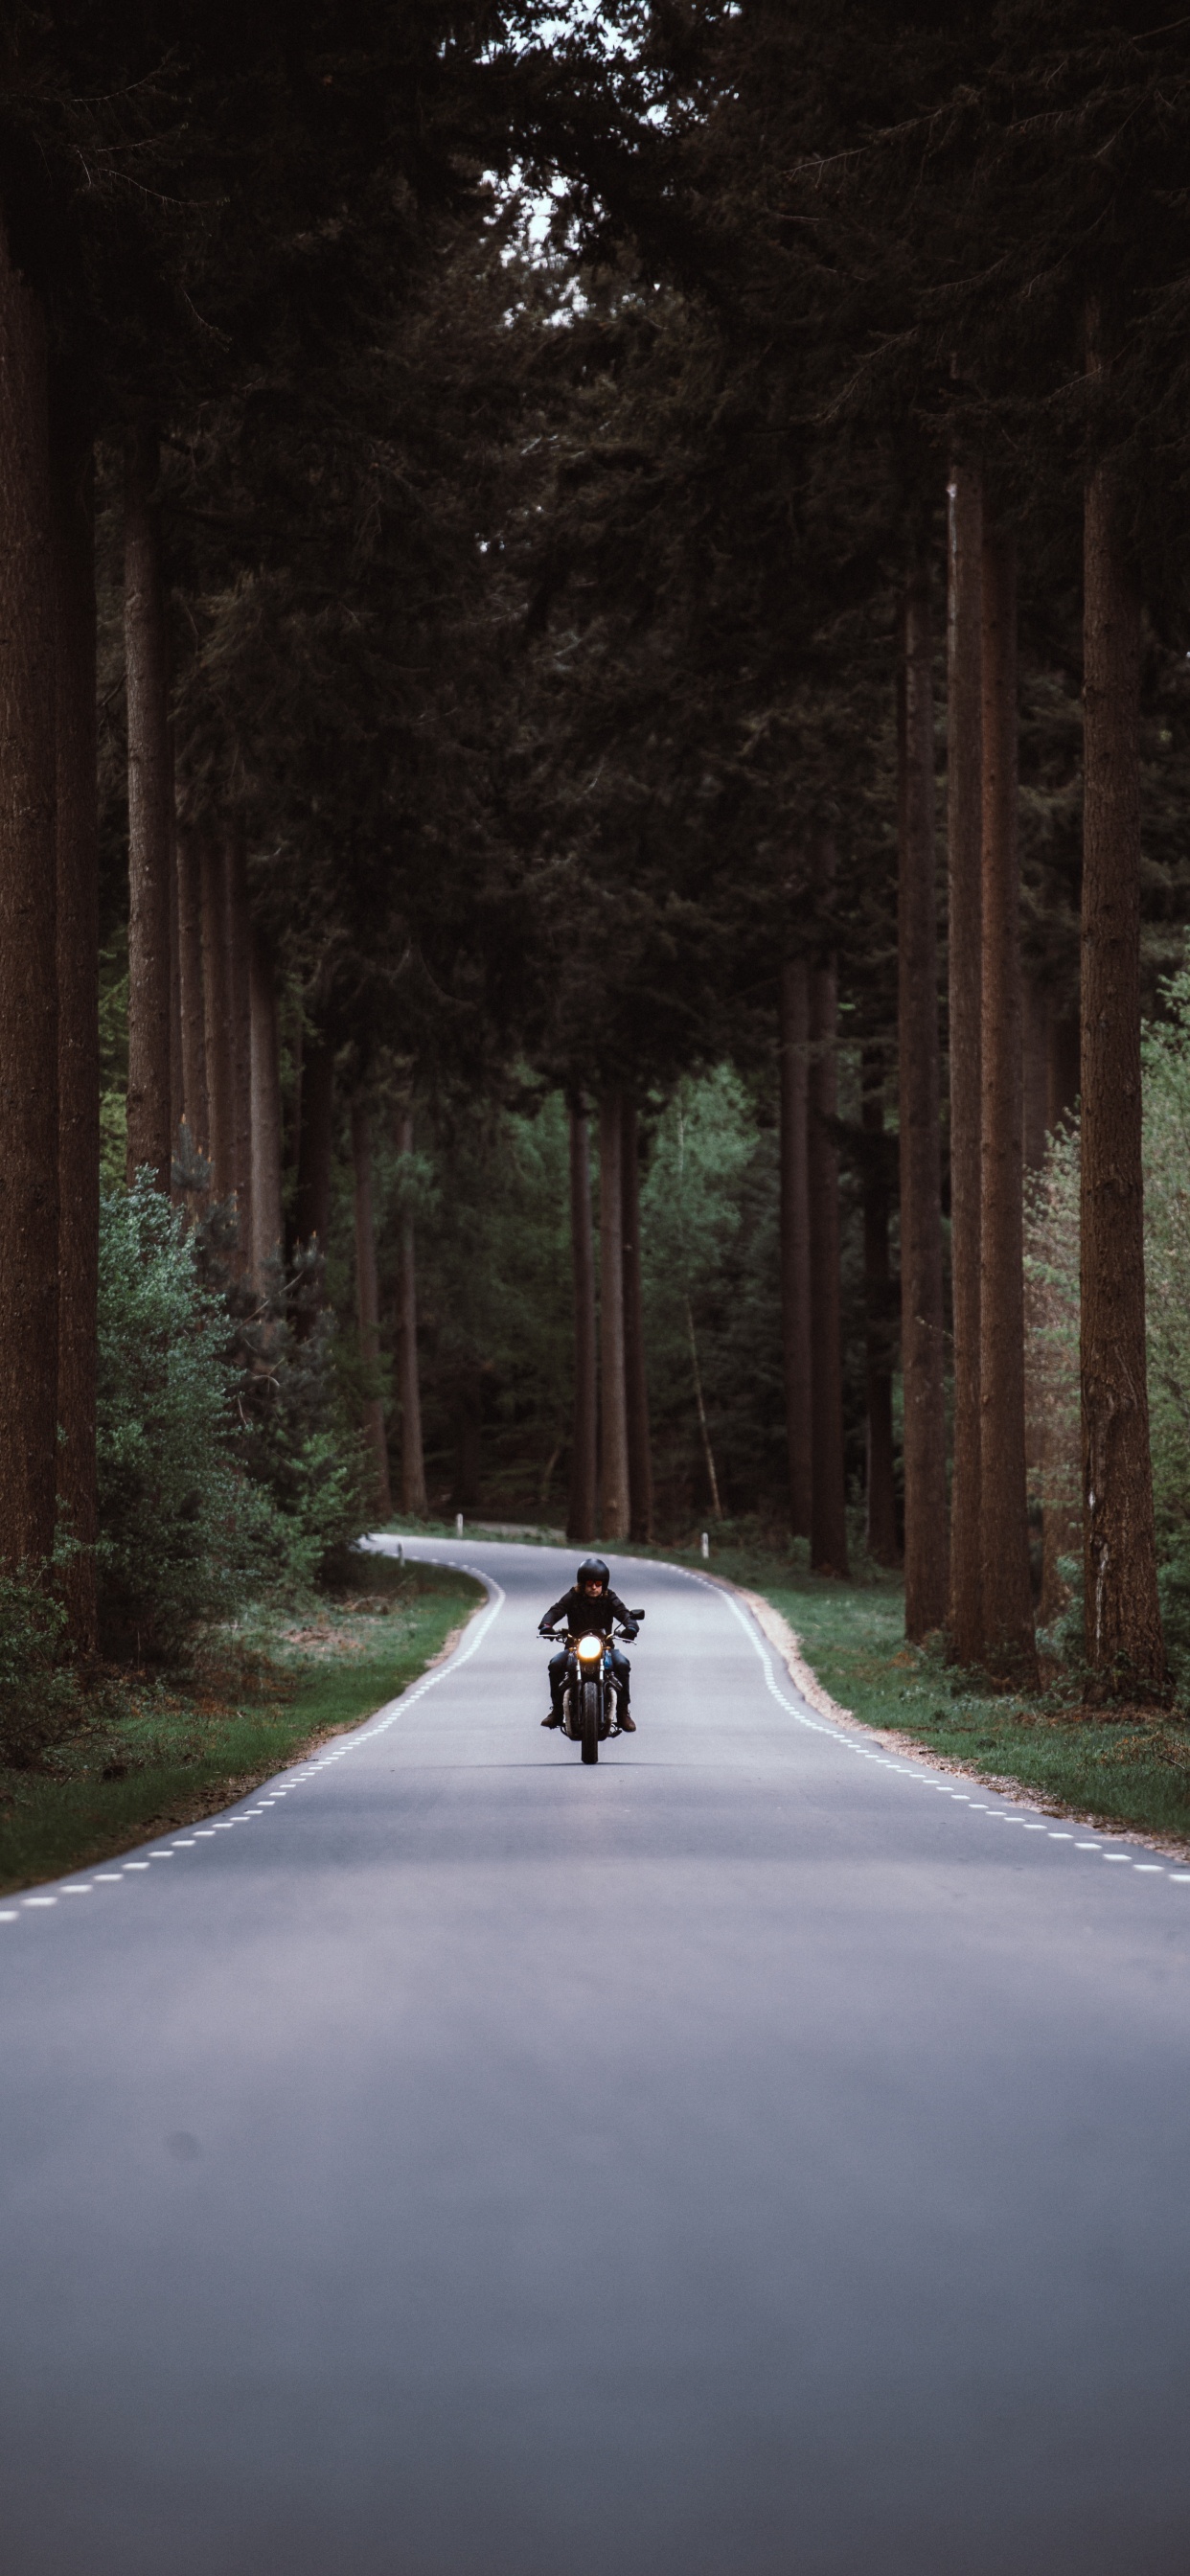 Personne à Moto Sur Route Entre Les Arbres Pendant la Journée. Wallpaper in 1242x2688 Resolution